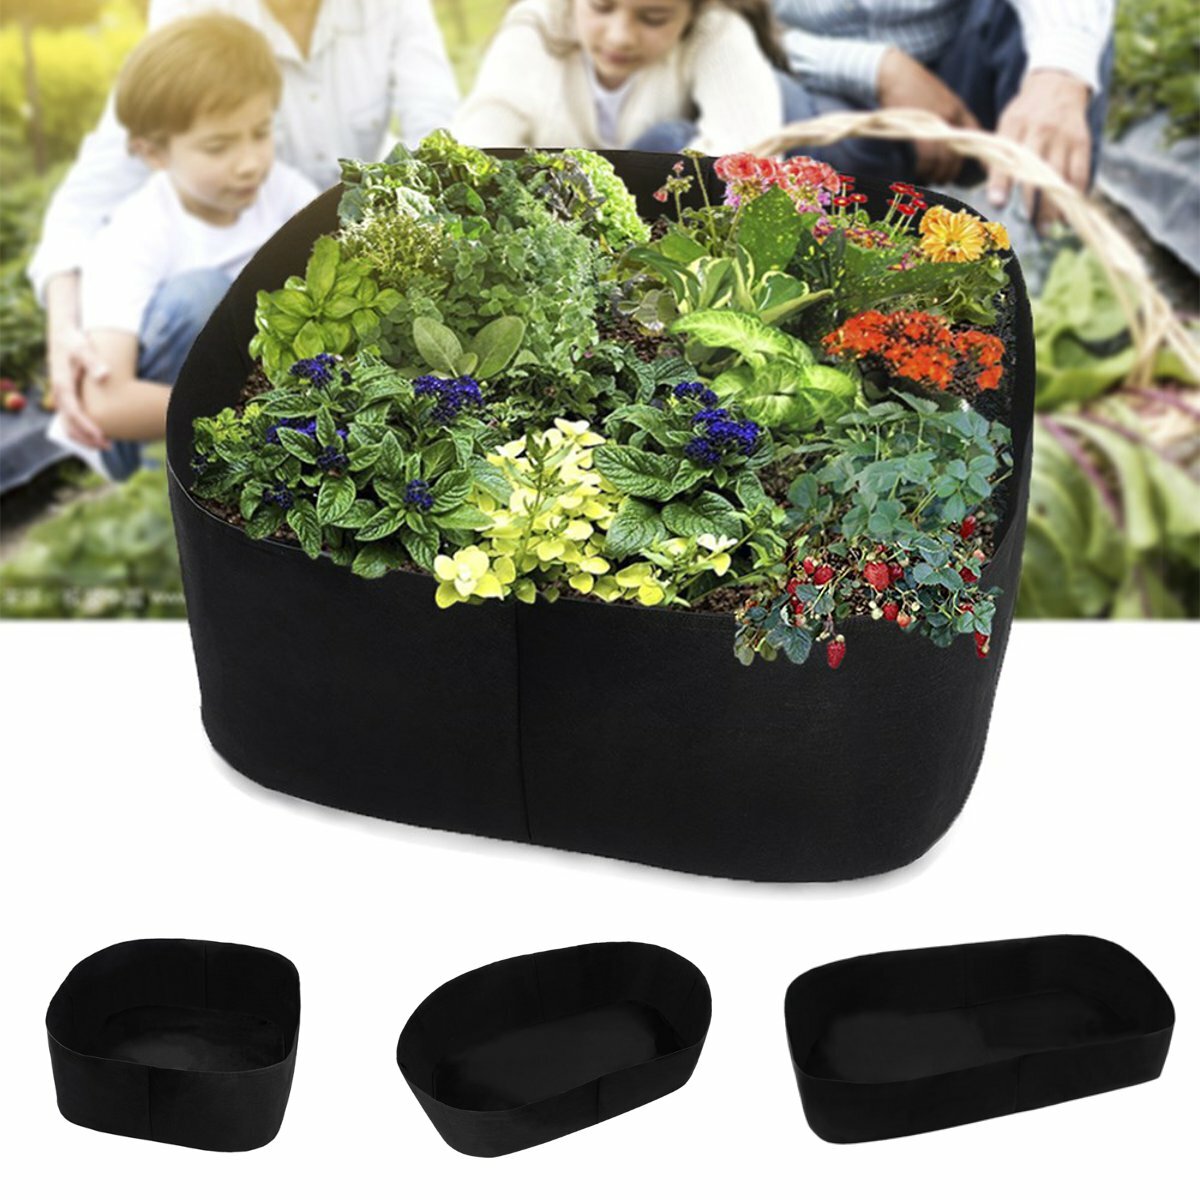 

Garden Grow Flowerpot Planter Container with Planting Pots for Outdoor Indoor Vegetable